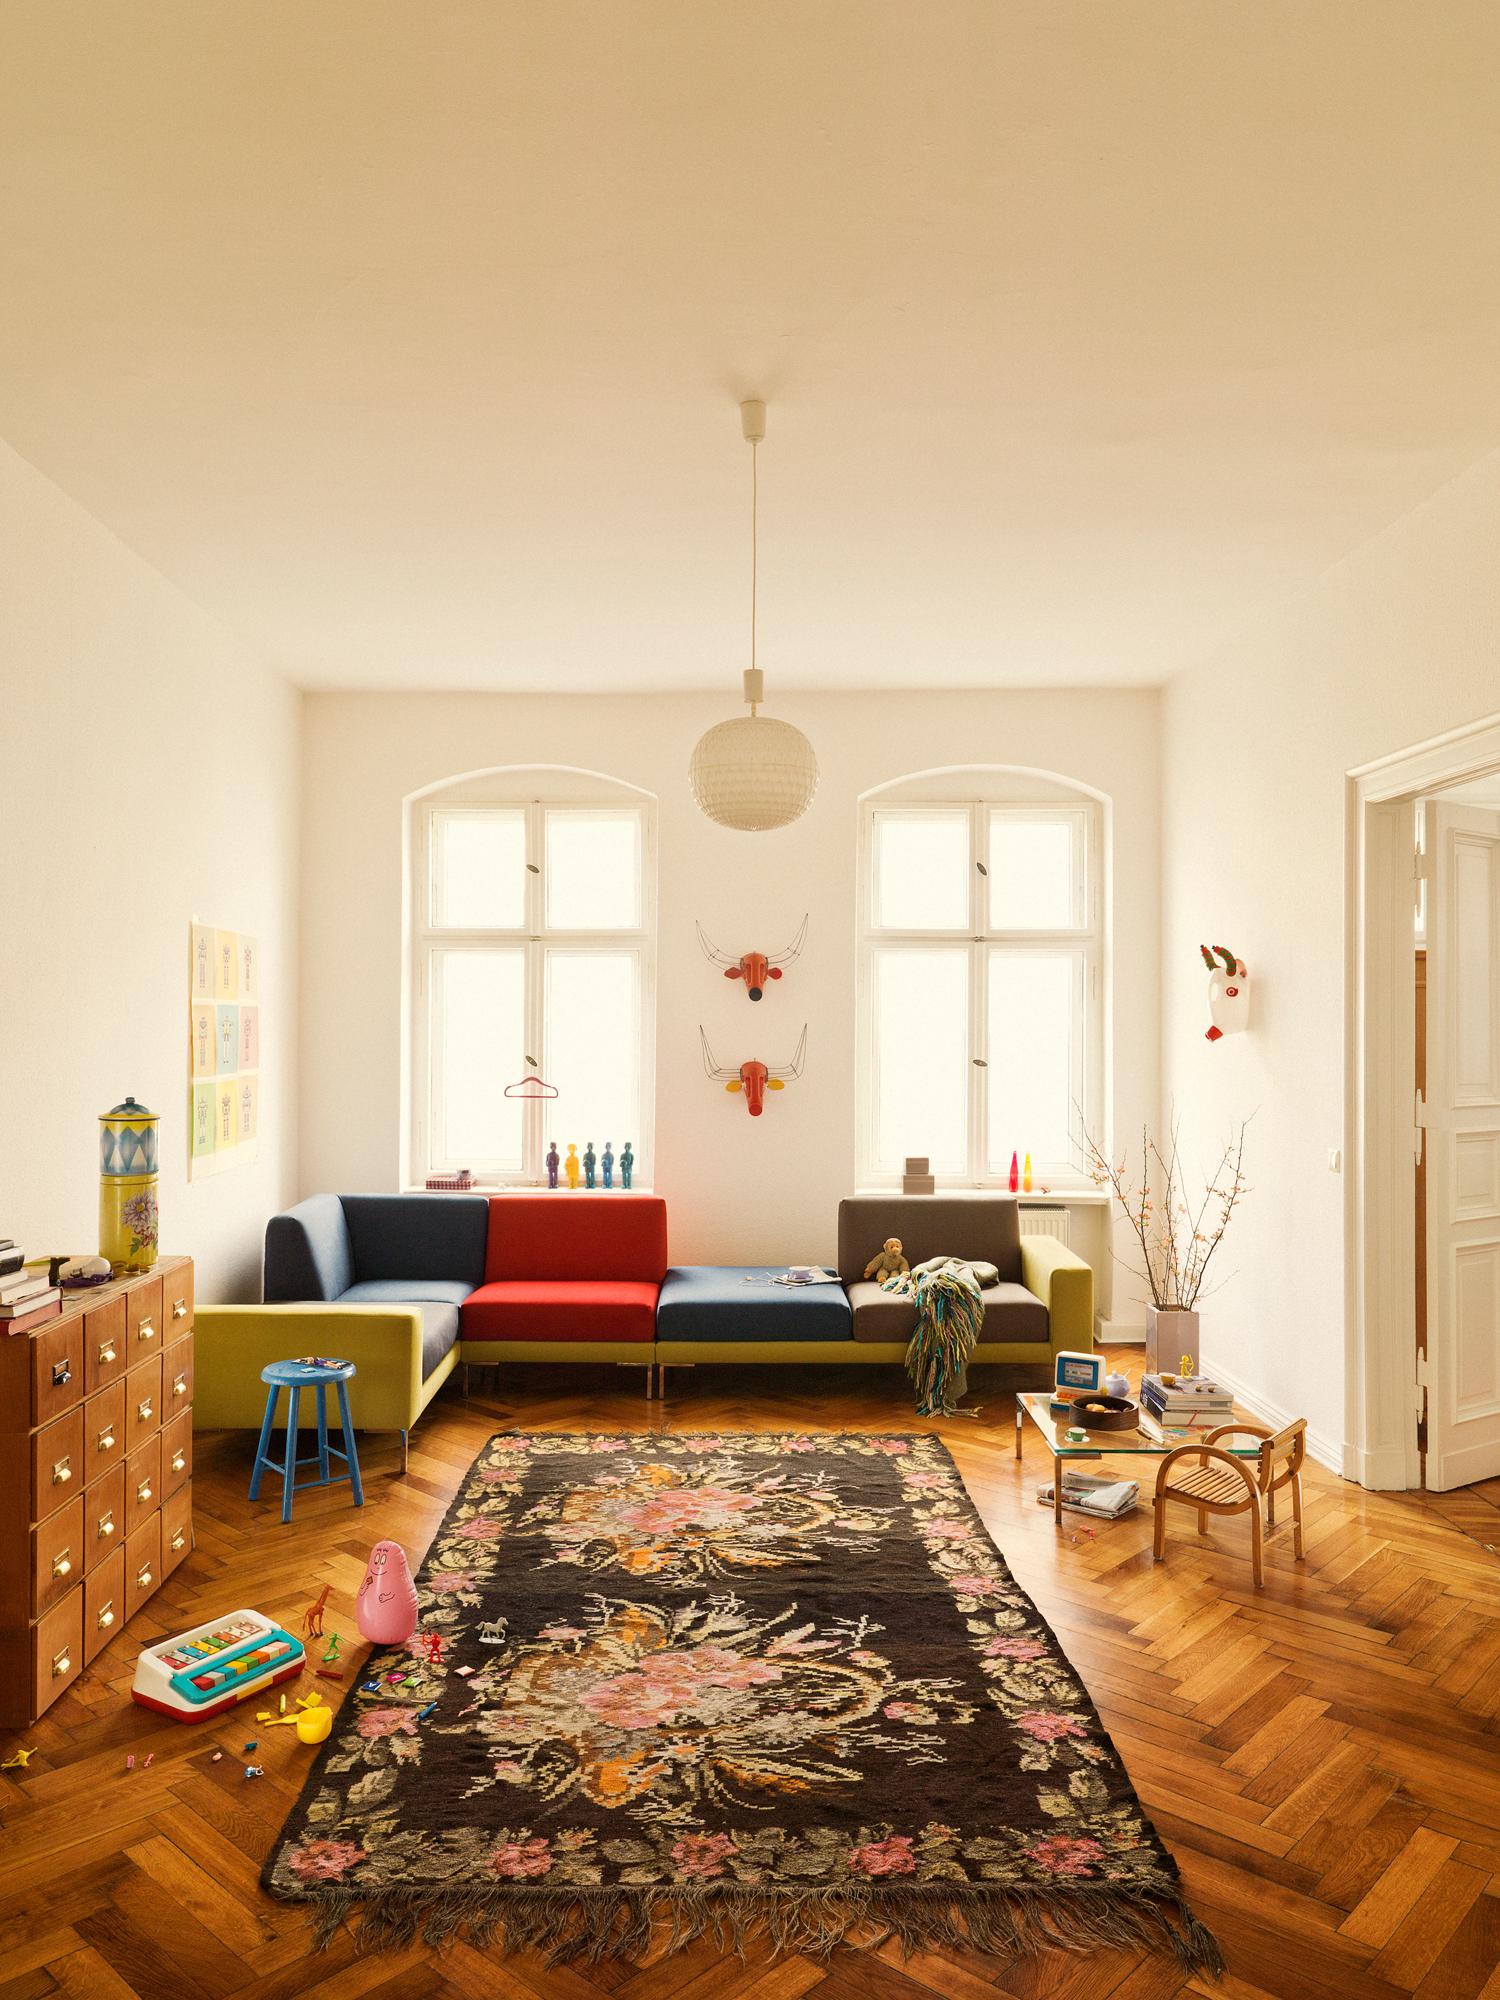 Farbiges Sofa in Rot, Grün und Blau #geweih #hocker #teppich #sofa #wohnzimmergestaltung #apothekerschrank ©Freistil Rolf Benz